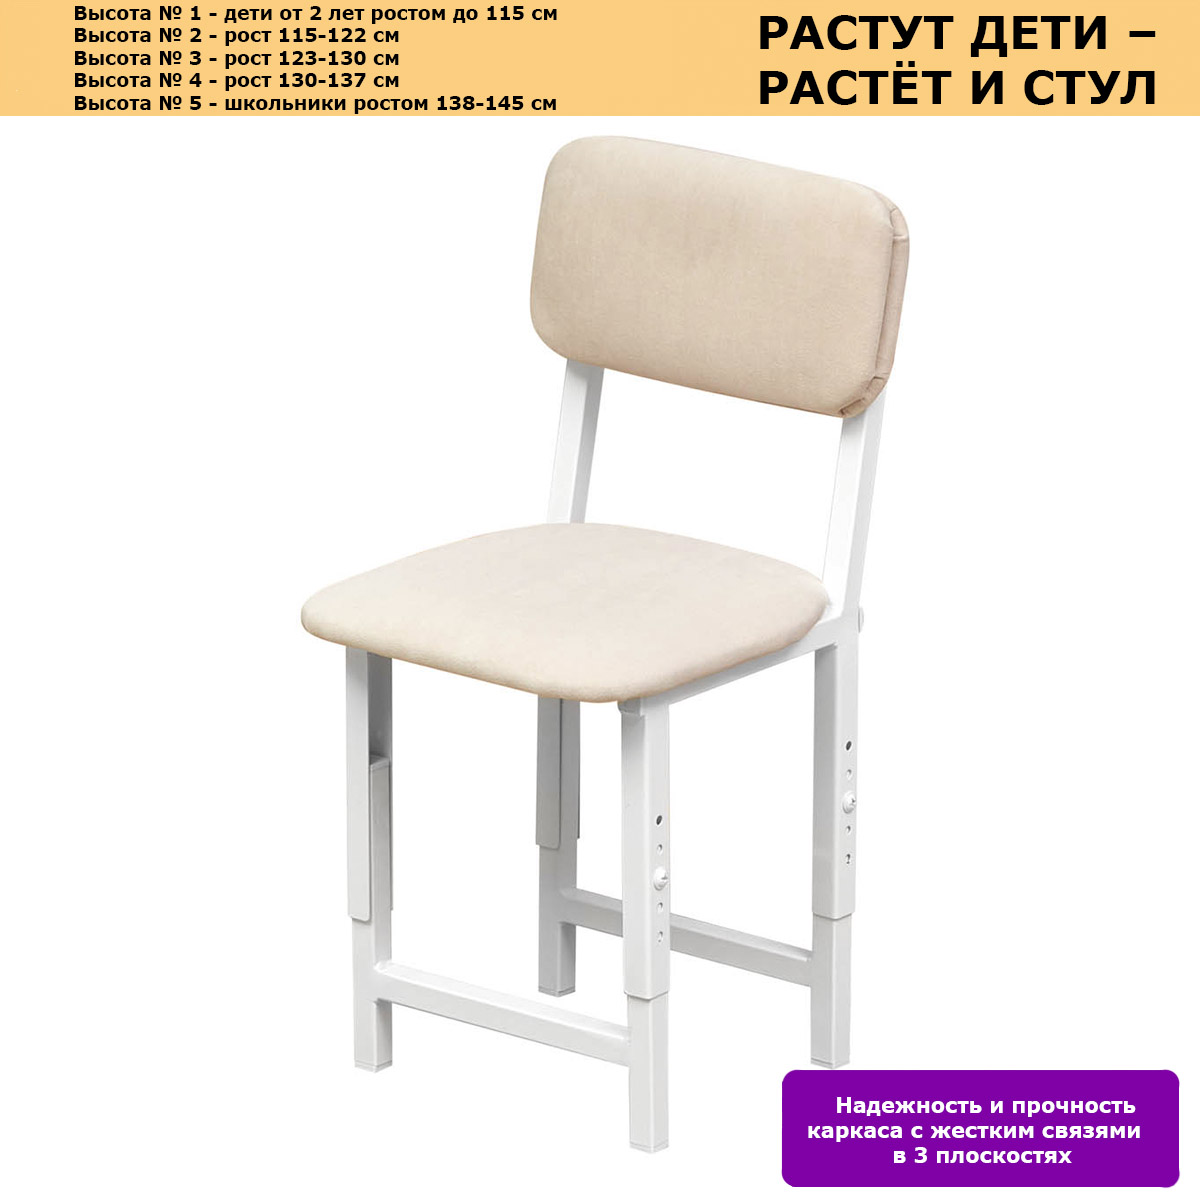 Секция 3 стула Изо без подлокот. 1550*610*760 к/з синий PV-9/308 ножки муар